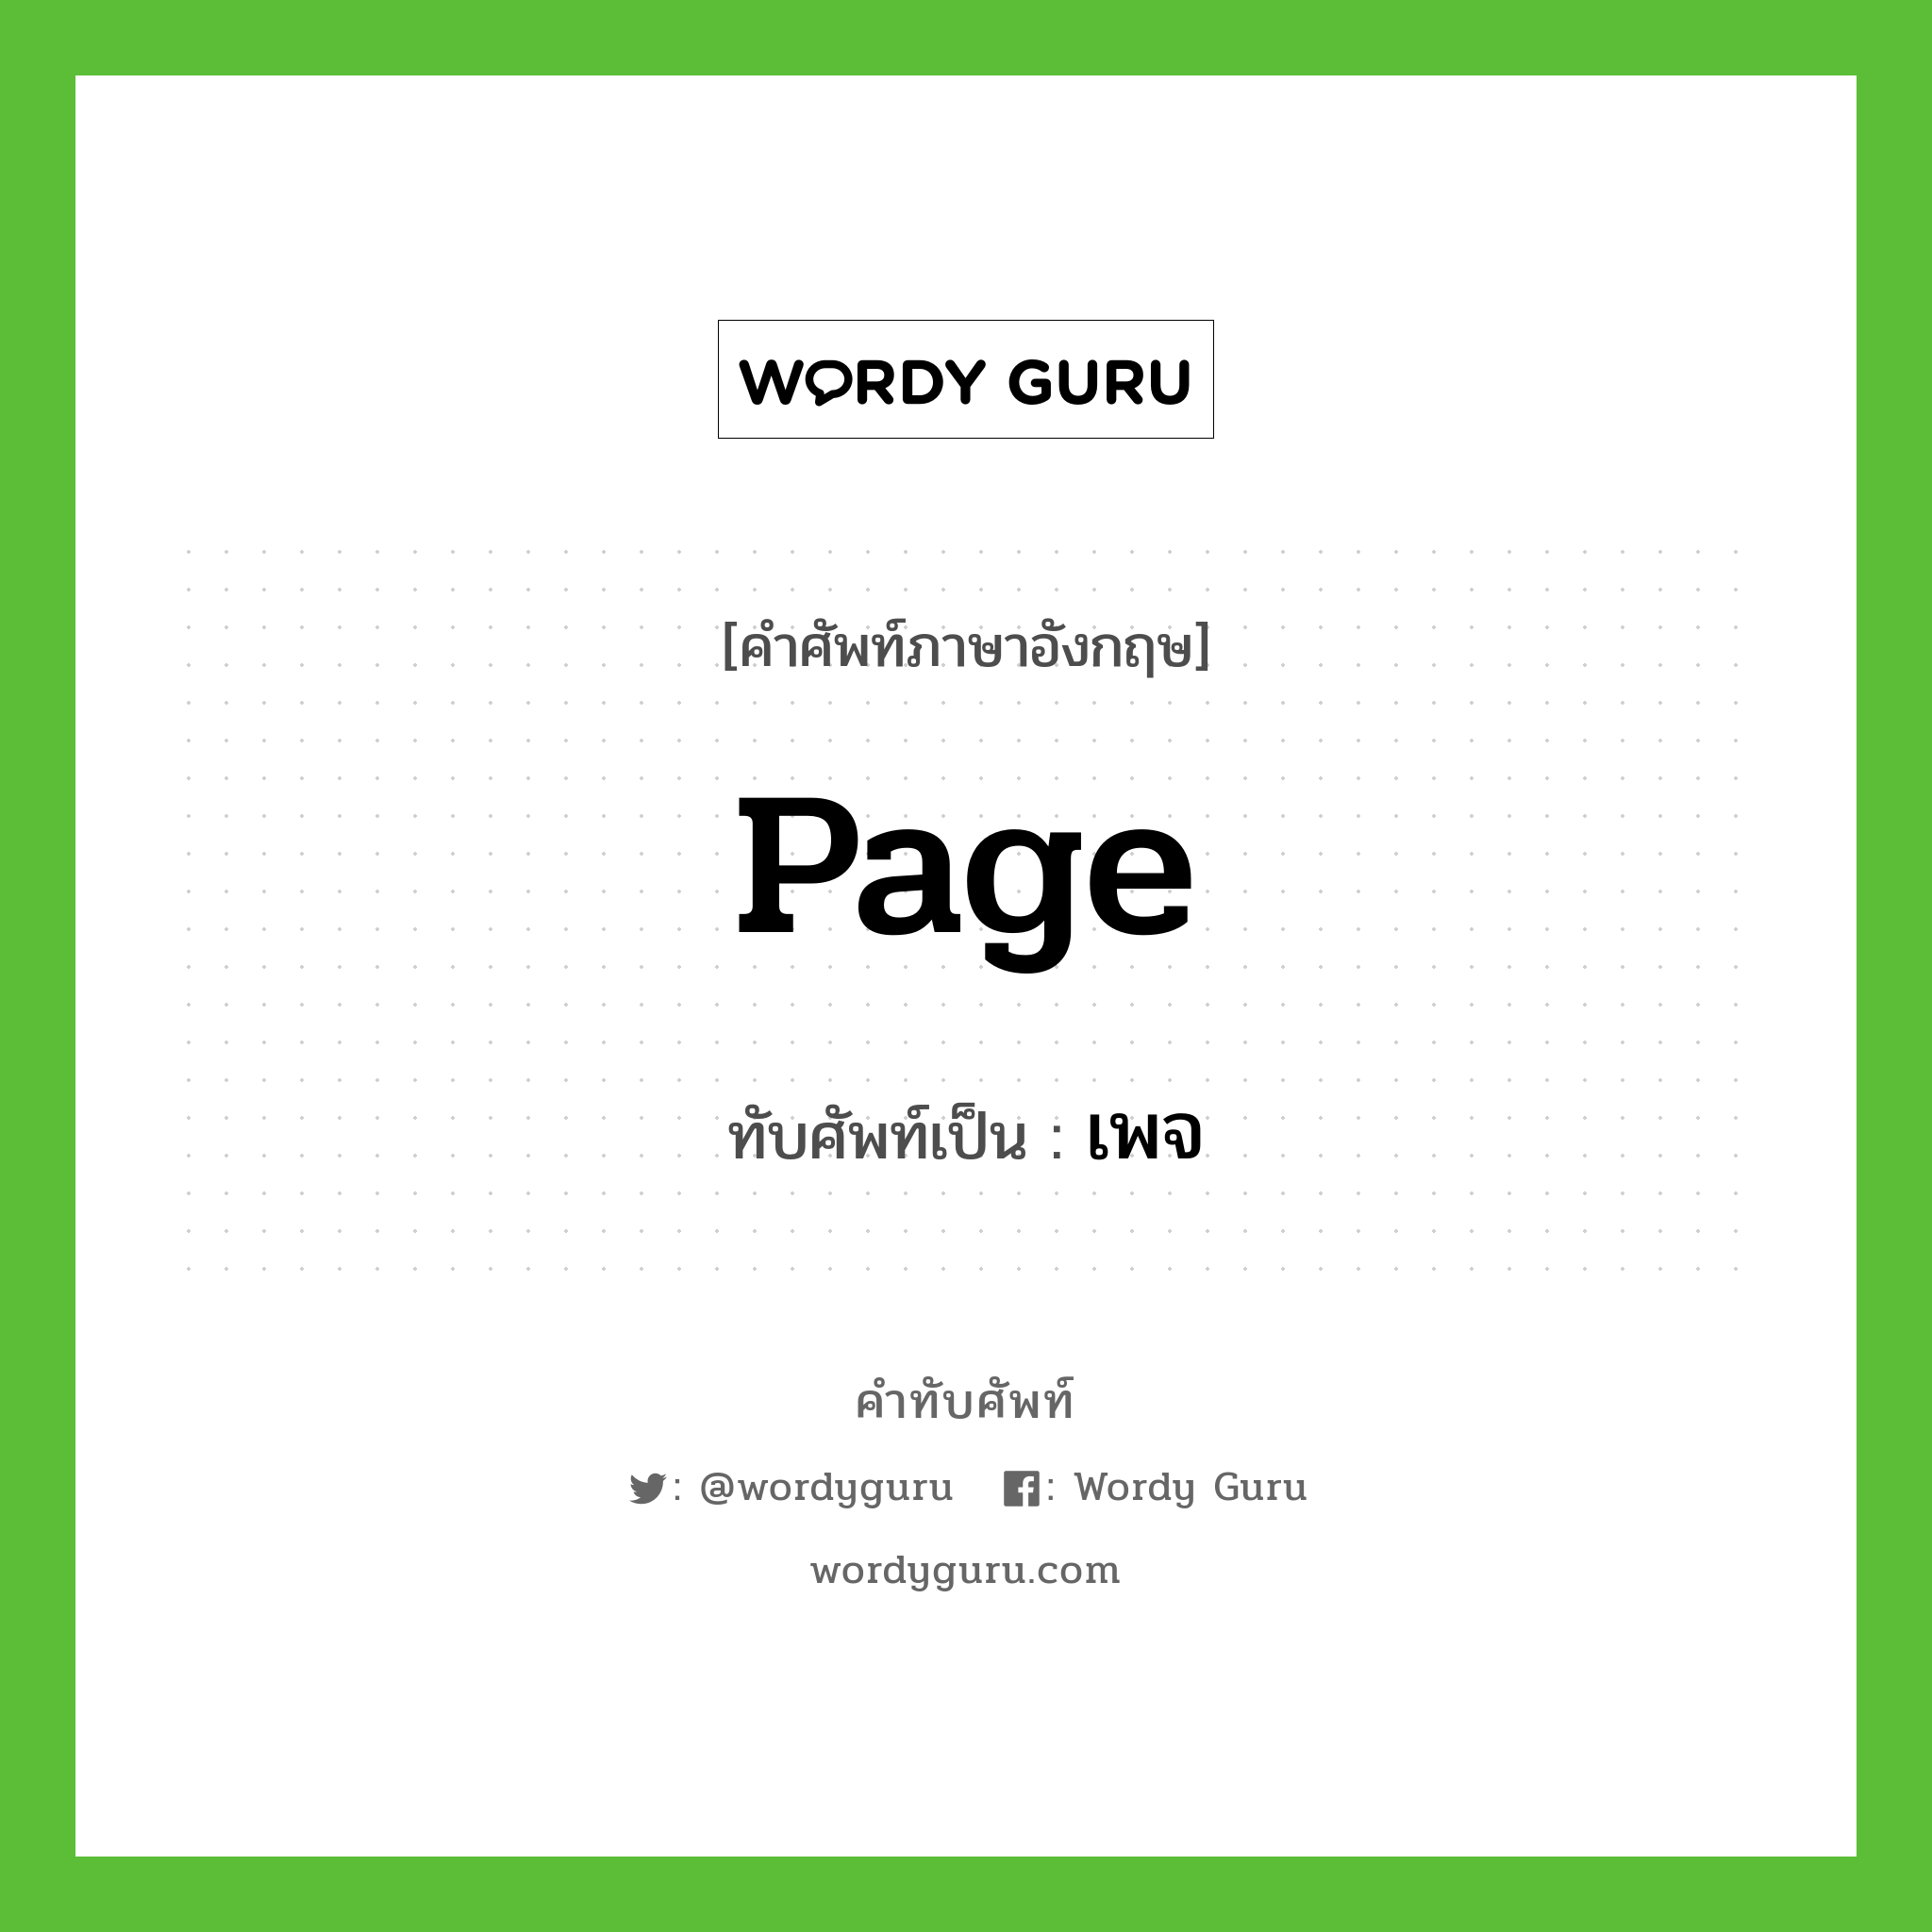 Page เขียนเป็นคำไทยว่าอะไร?, คำศัพท์ภาษาอังกฤษ Page ทับศัพท์เป็น เพจ